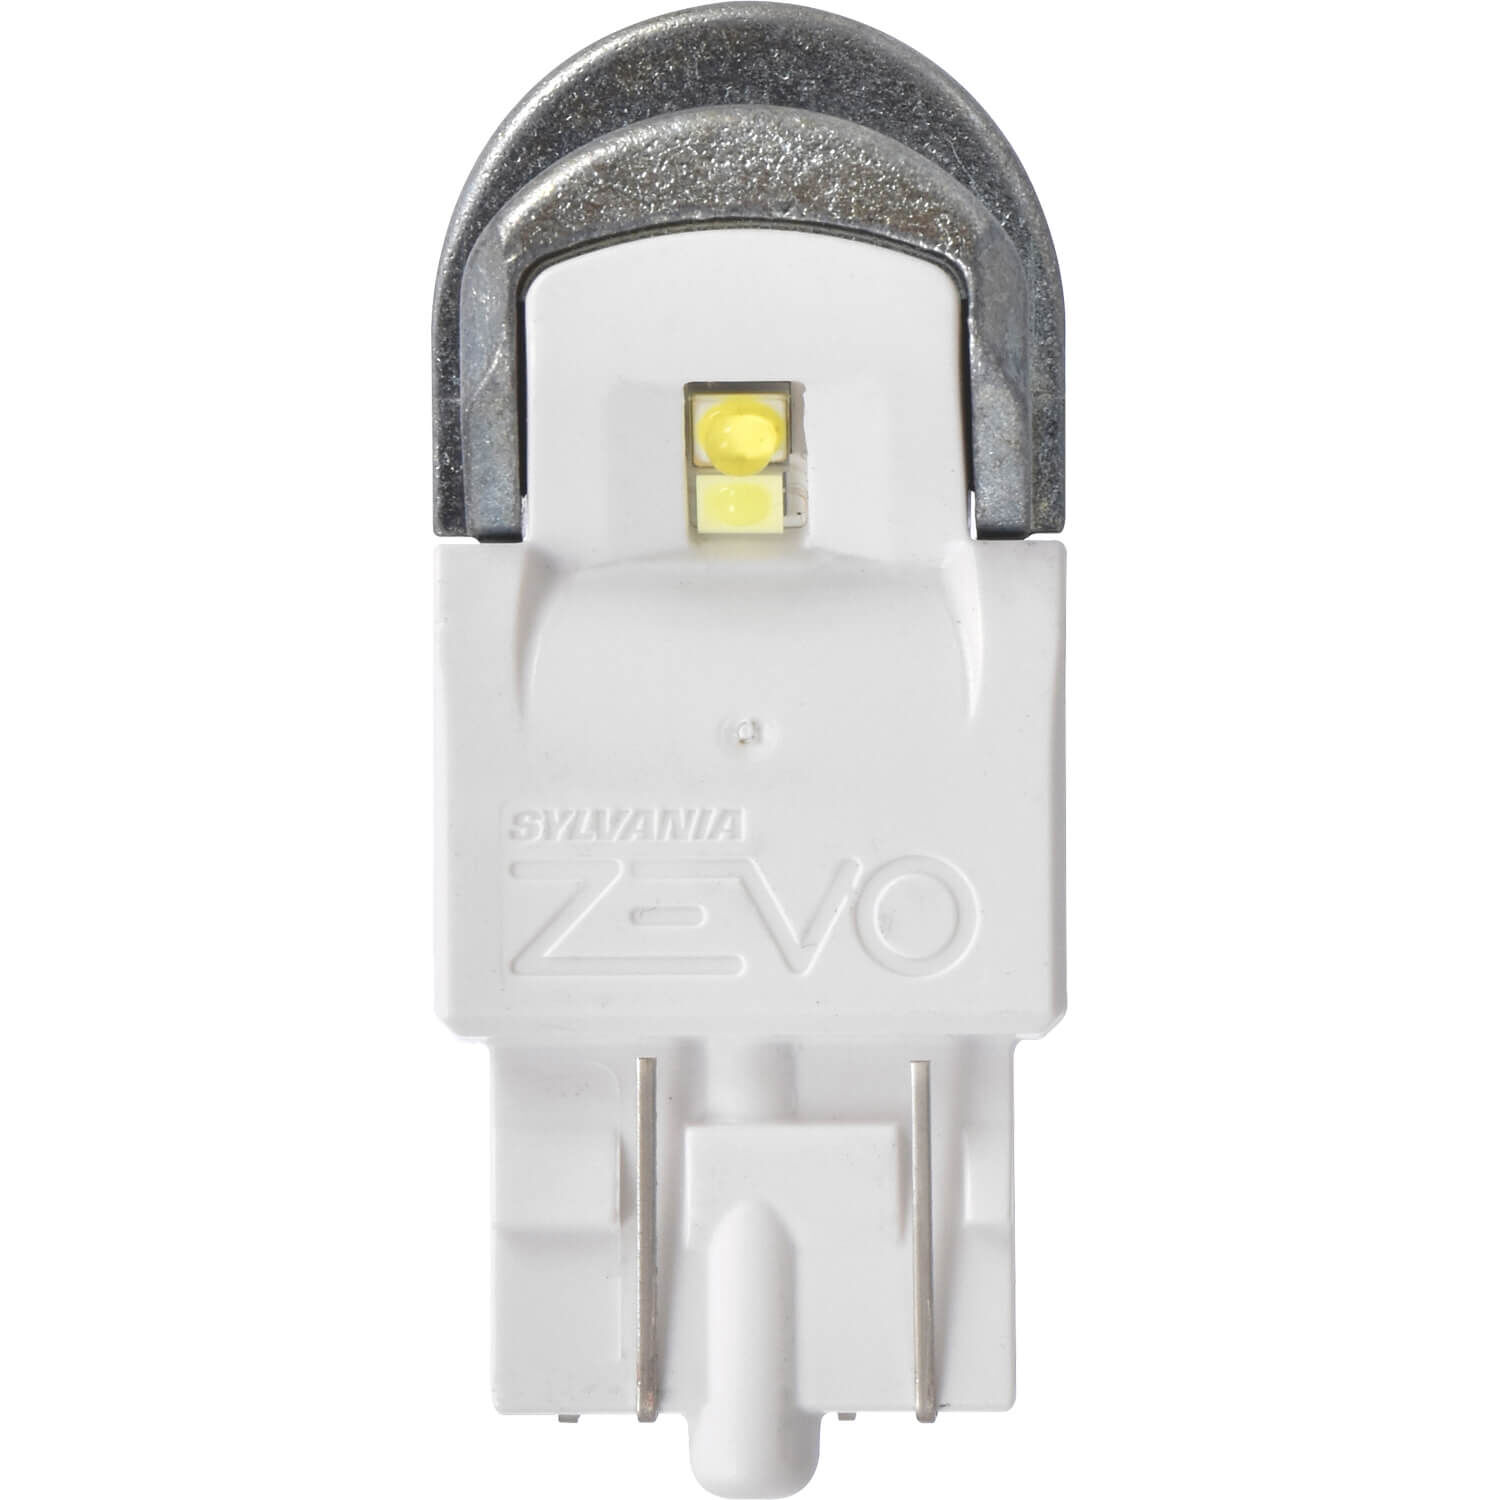 SYLVANIA 7443 WHITE ZEVO LED Mini, 2 Pack